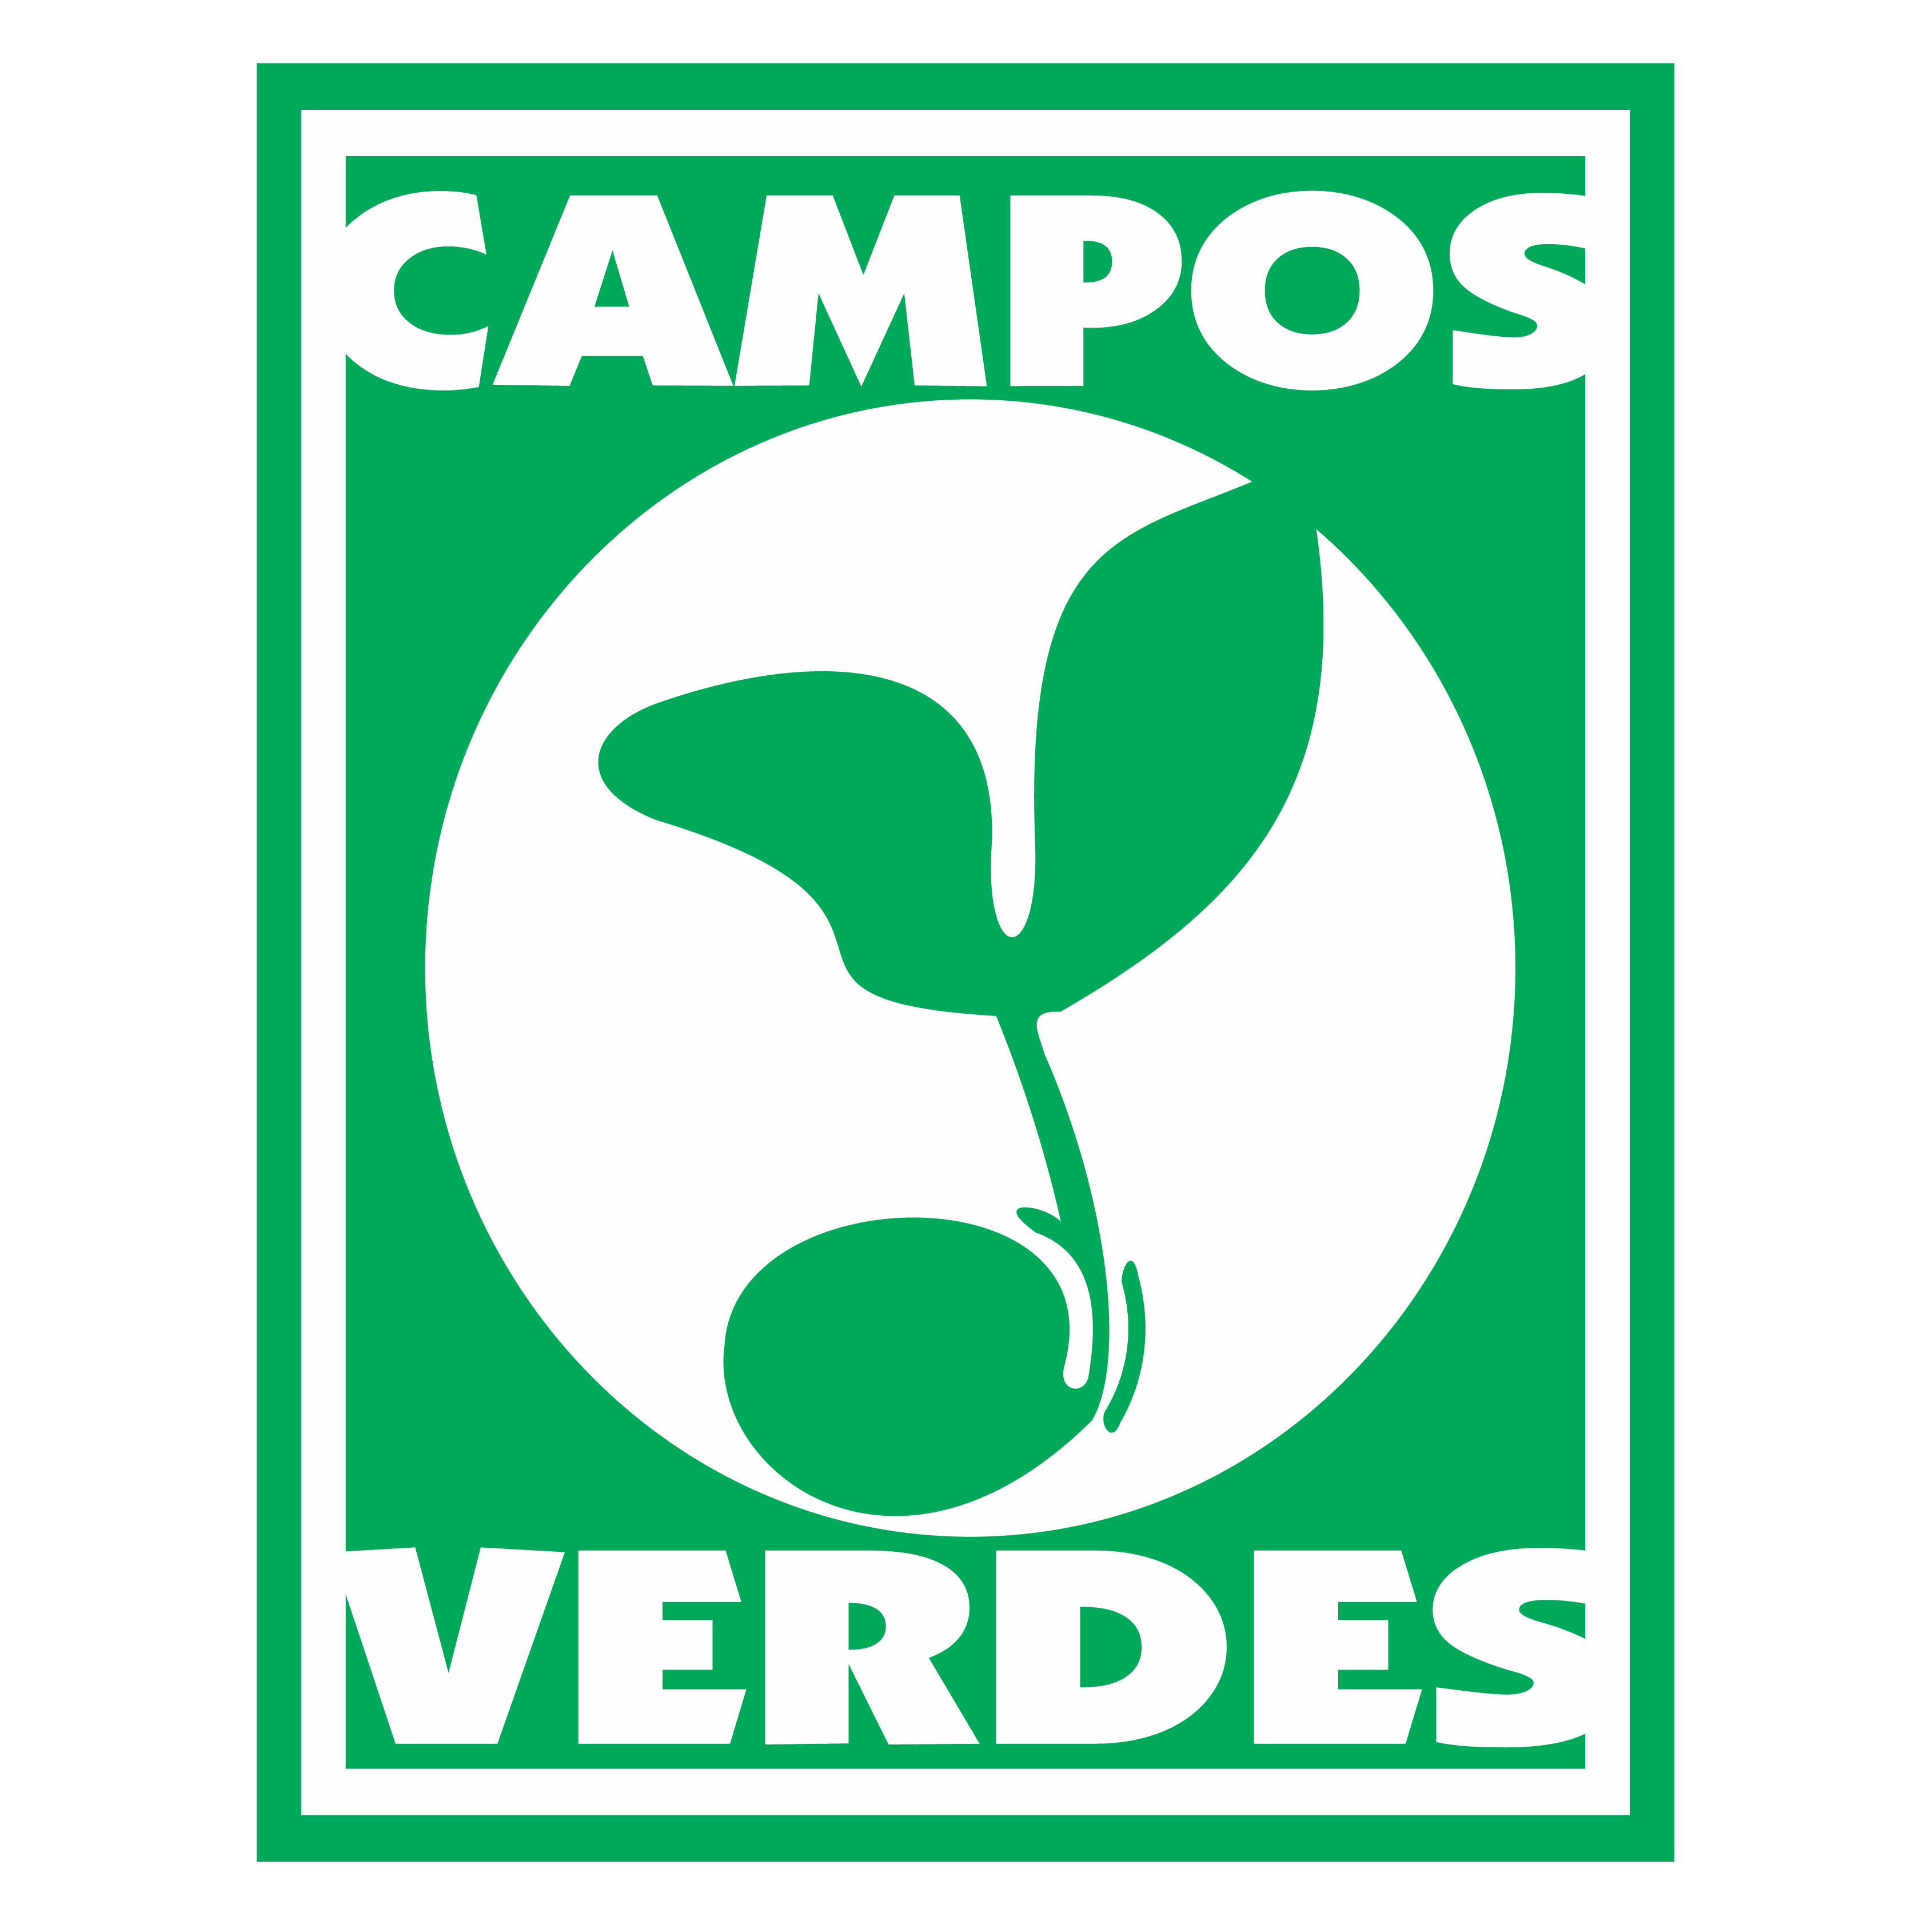 Campos Verdes 